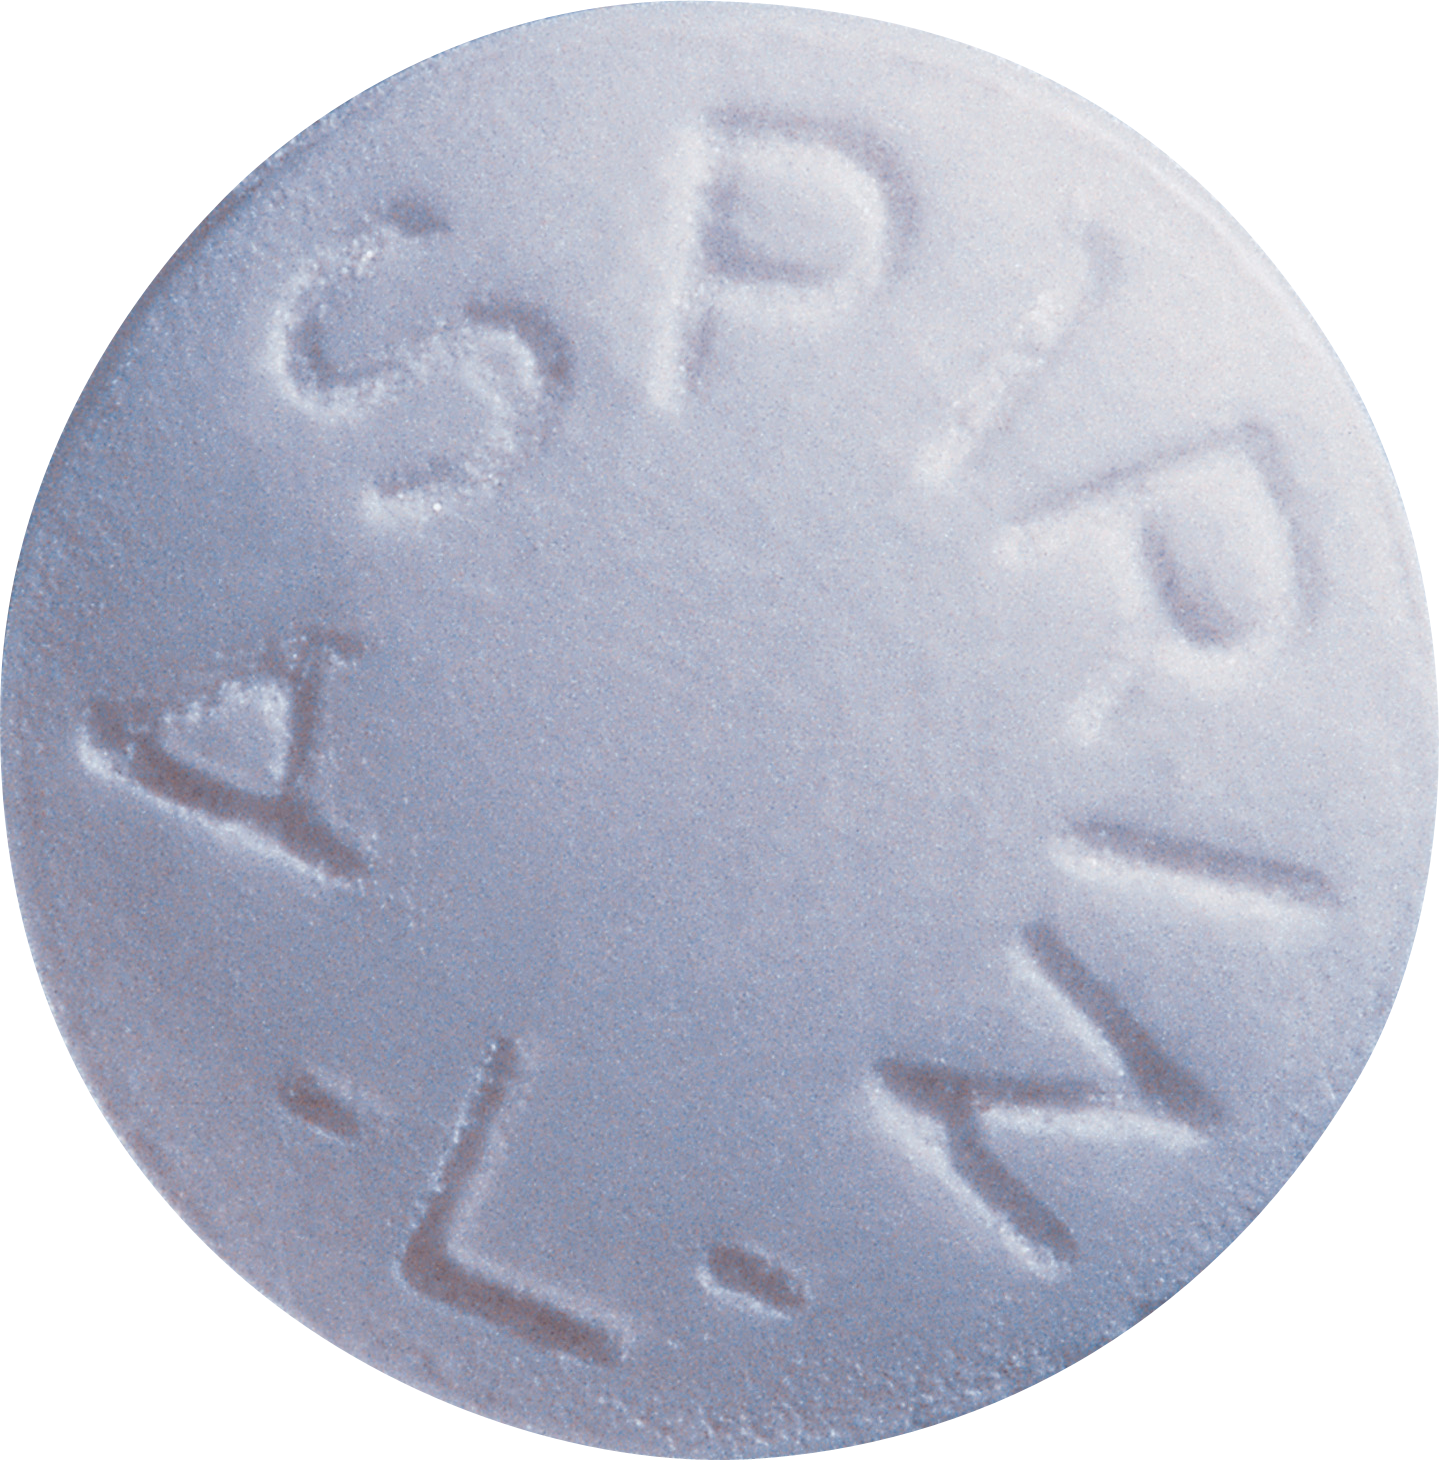 Aspirin Tablet PNG Image